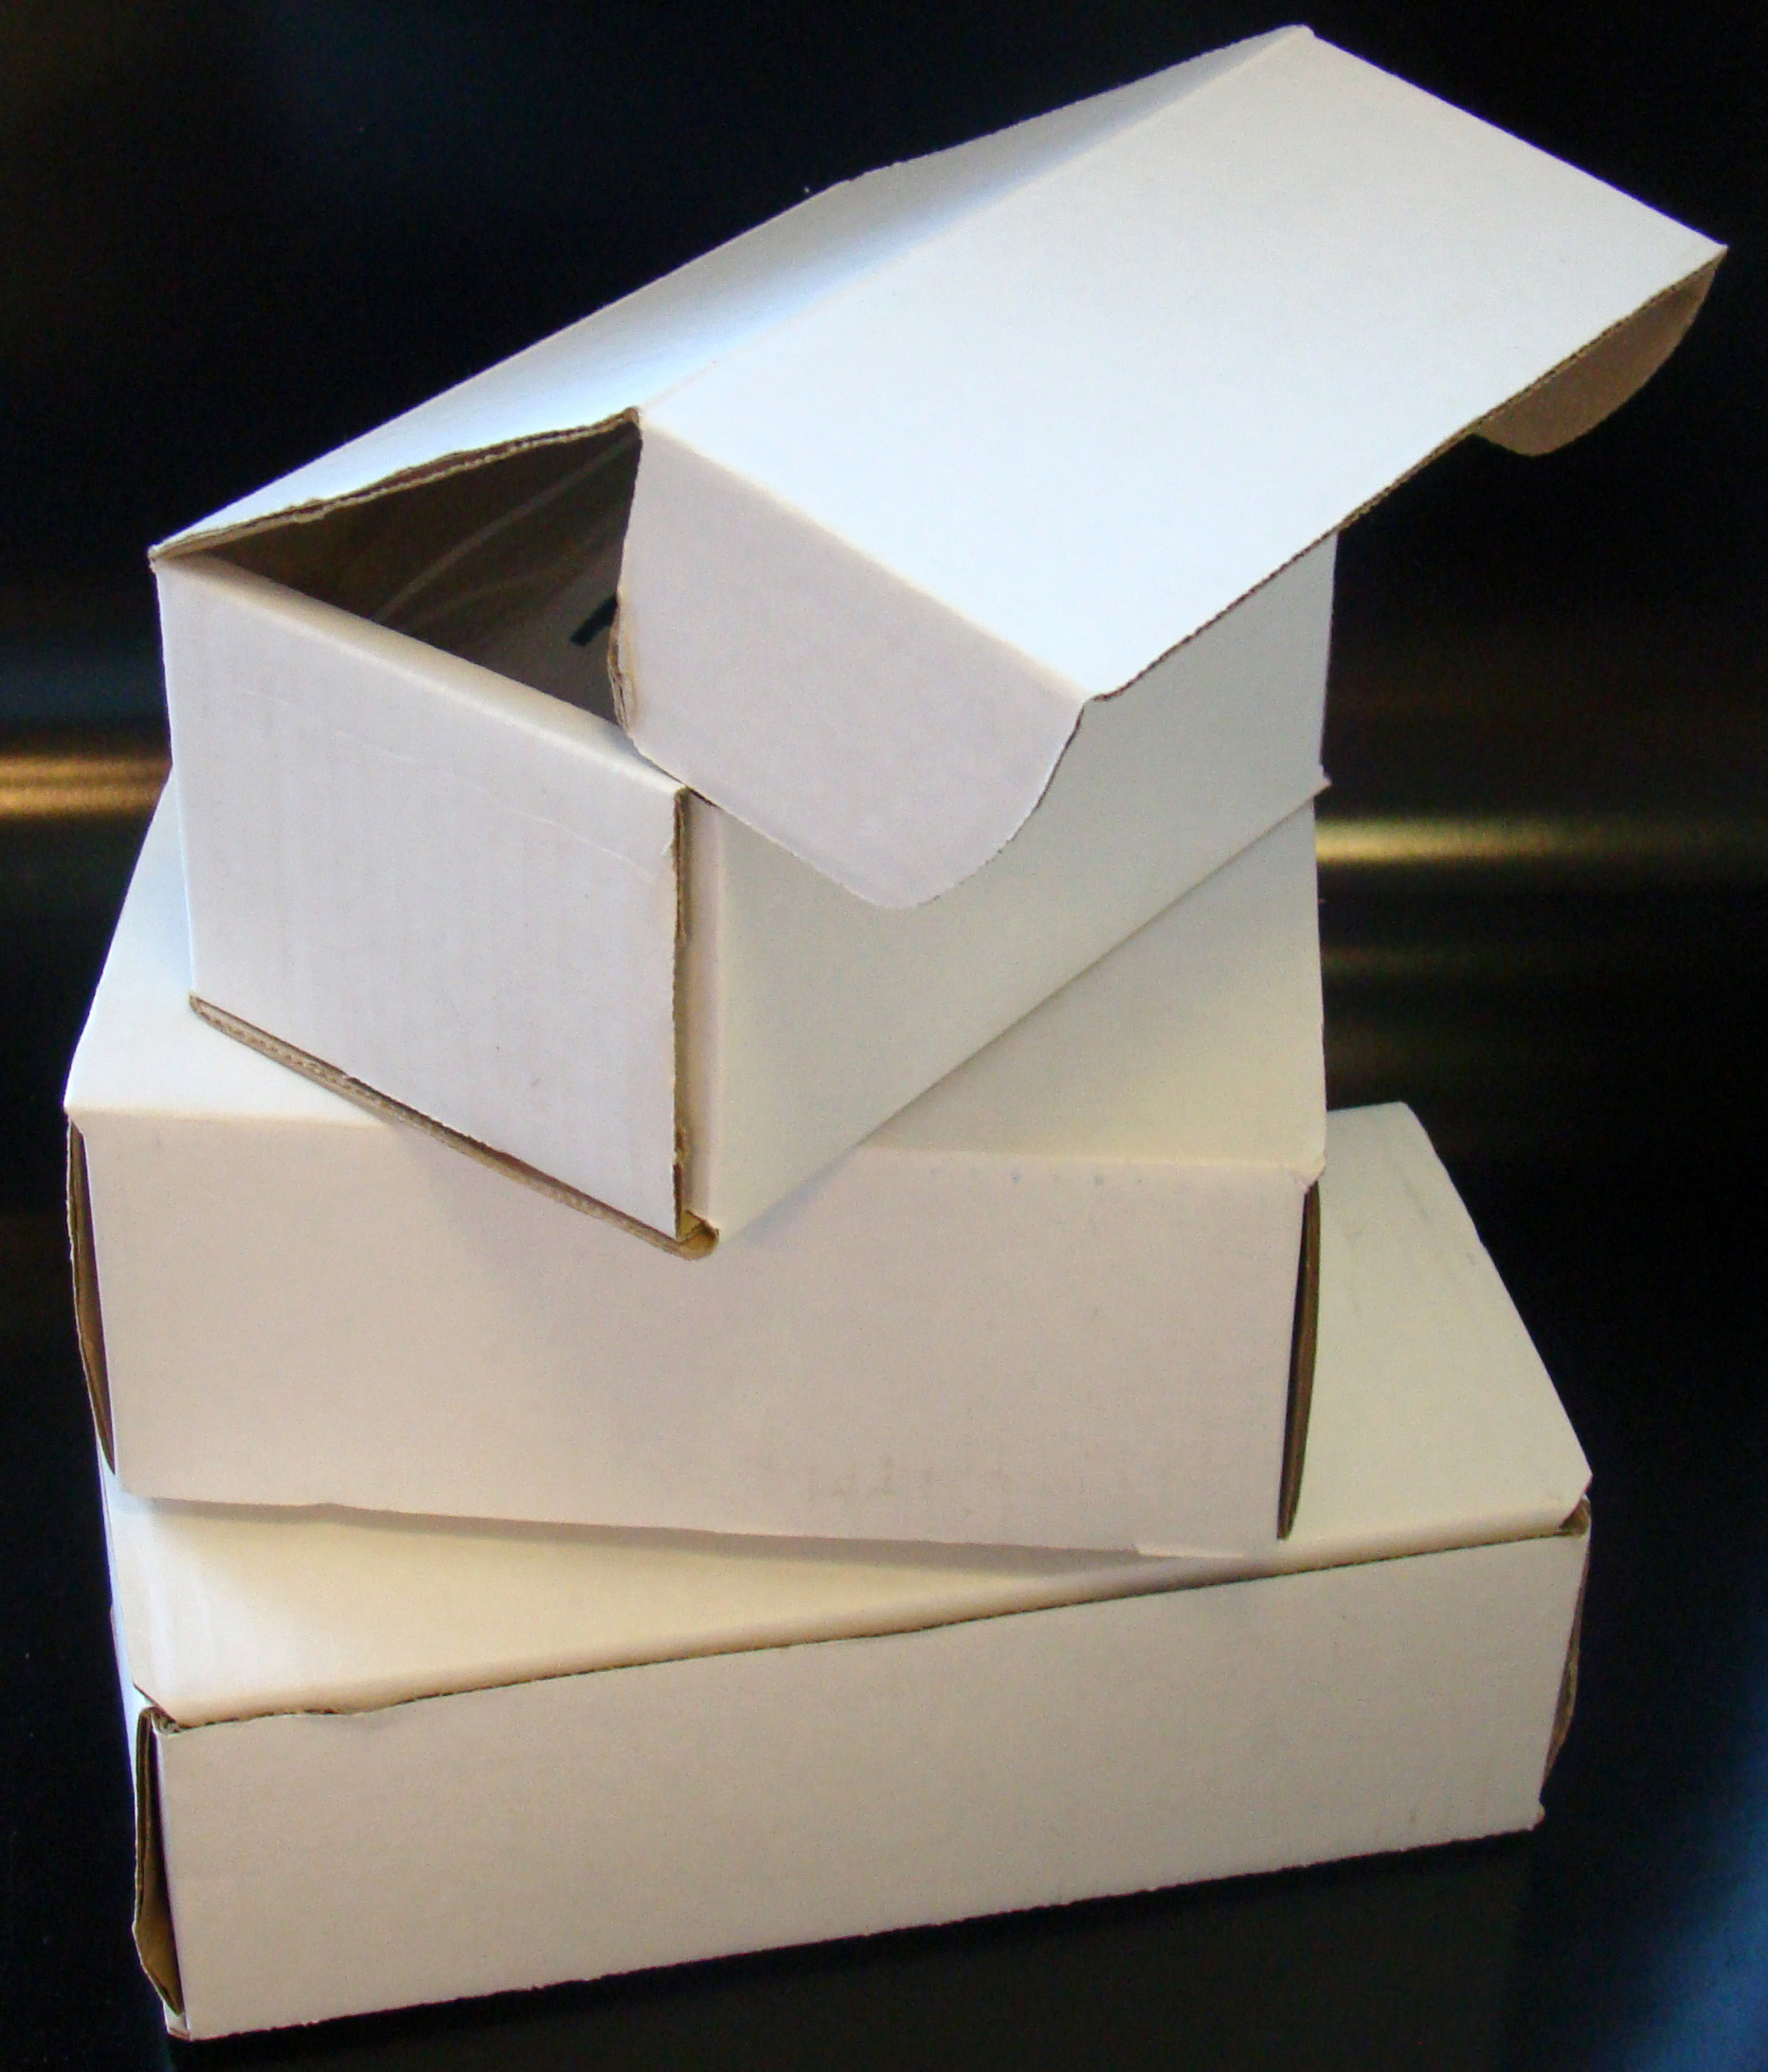 Model Boxes - 4"W x 3"H